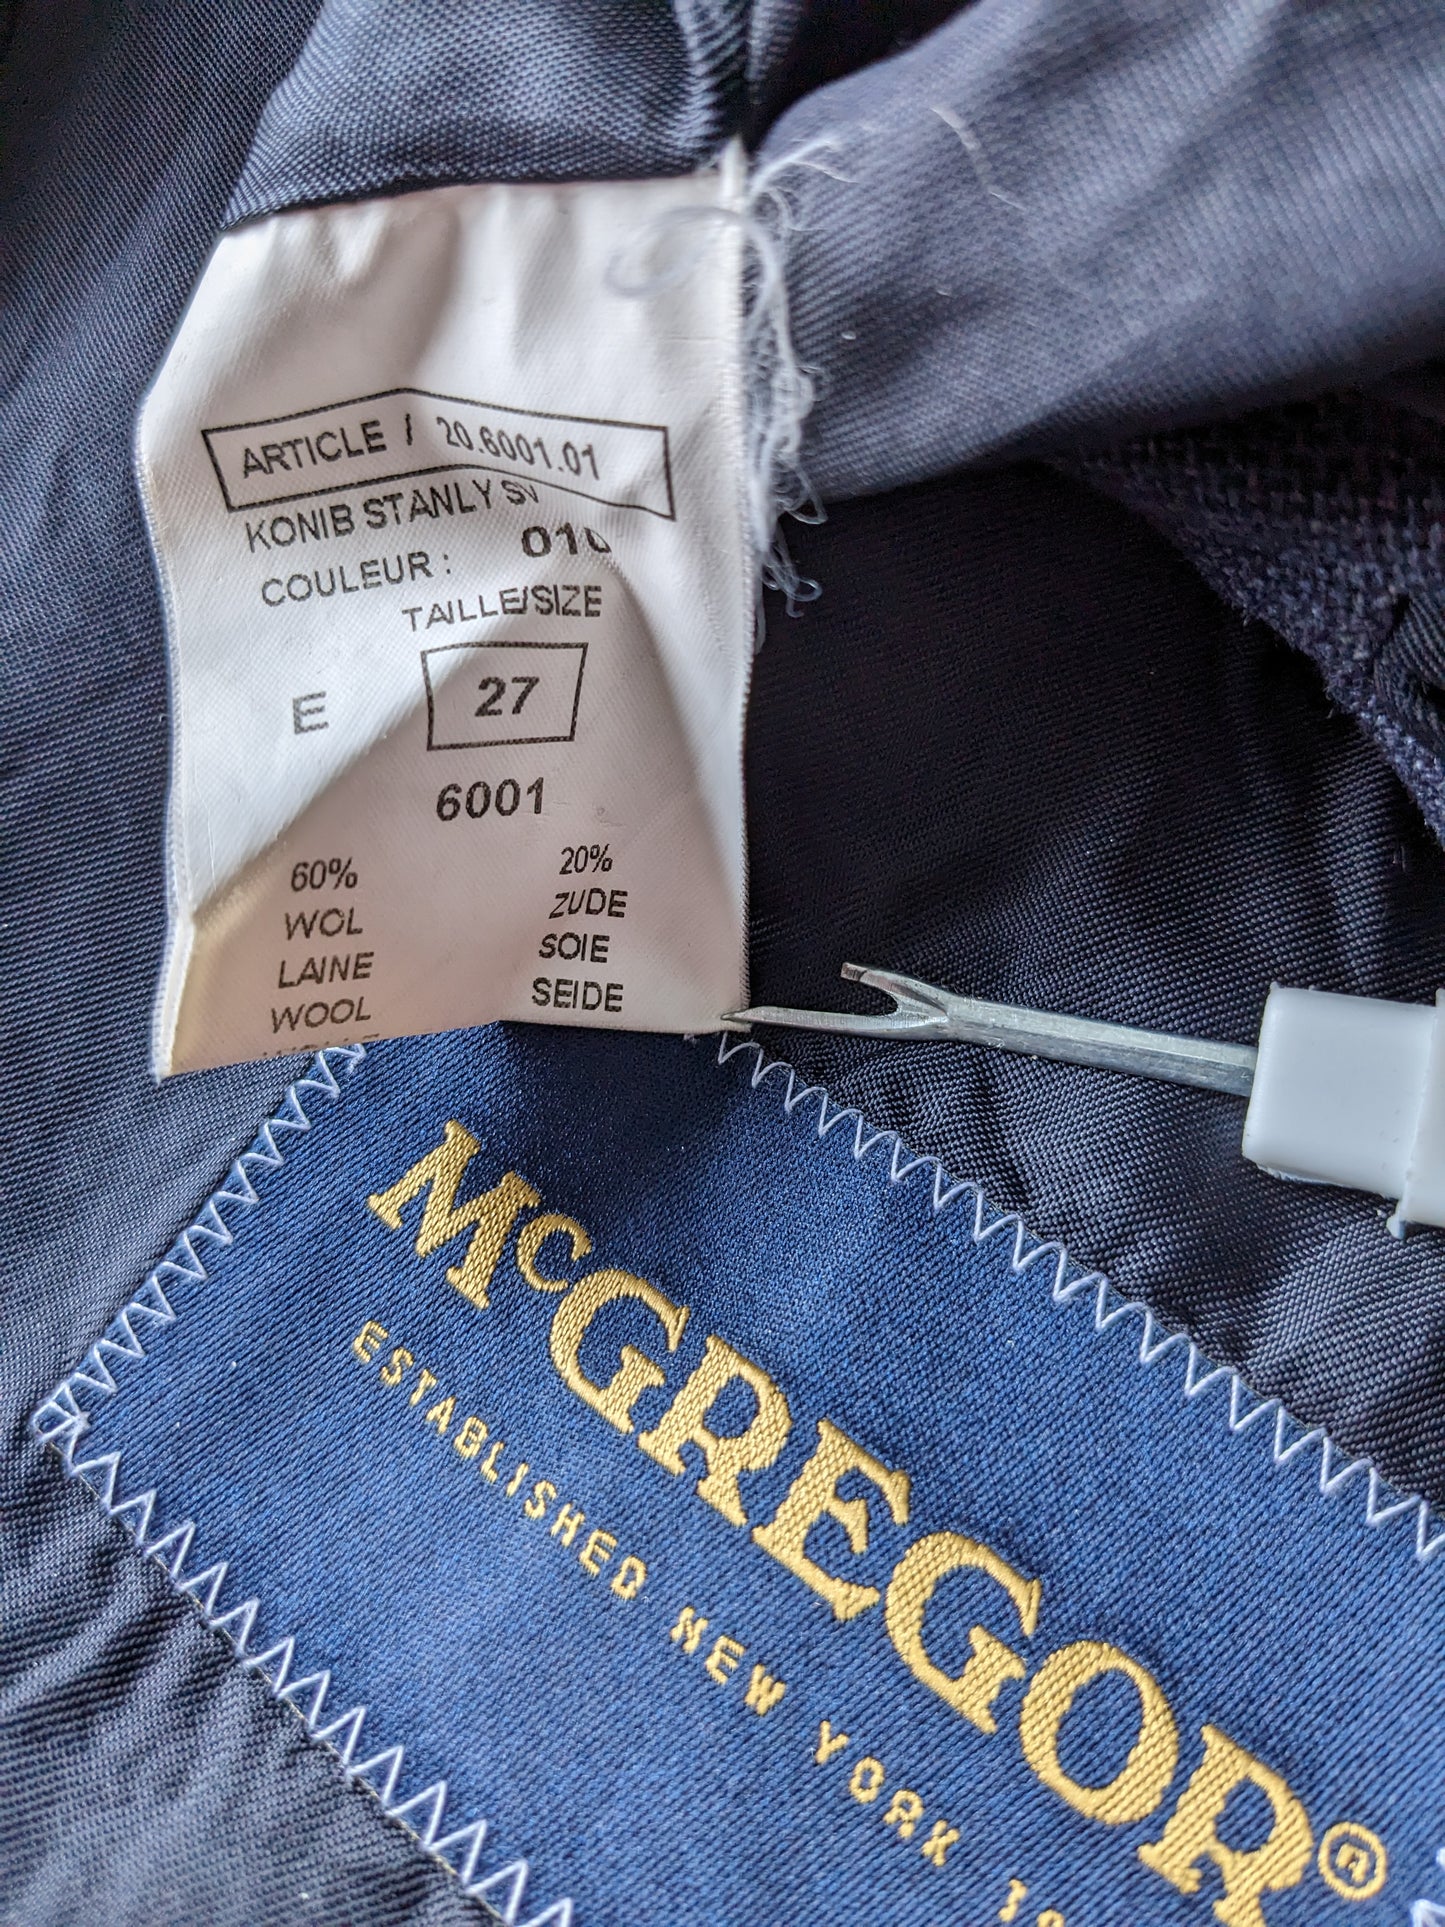 Veste en soie en laine McGregor. Bleu noir mélangé. Taille 27 (54 / L).